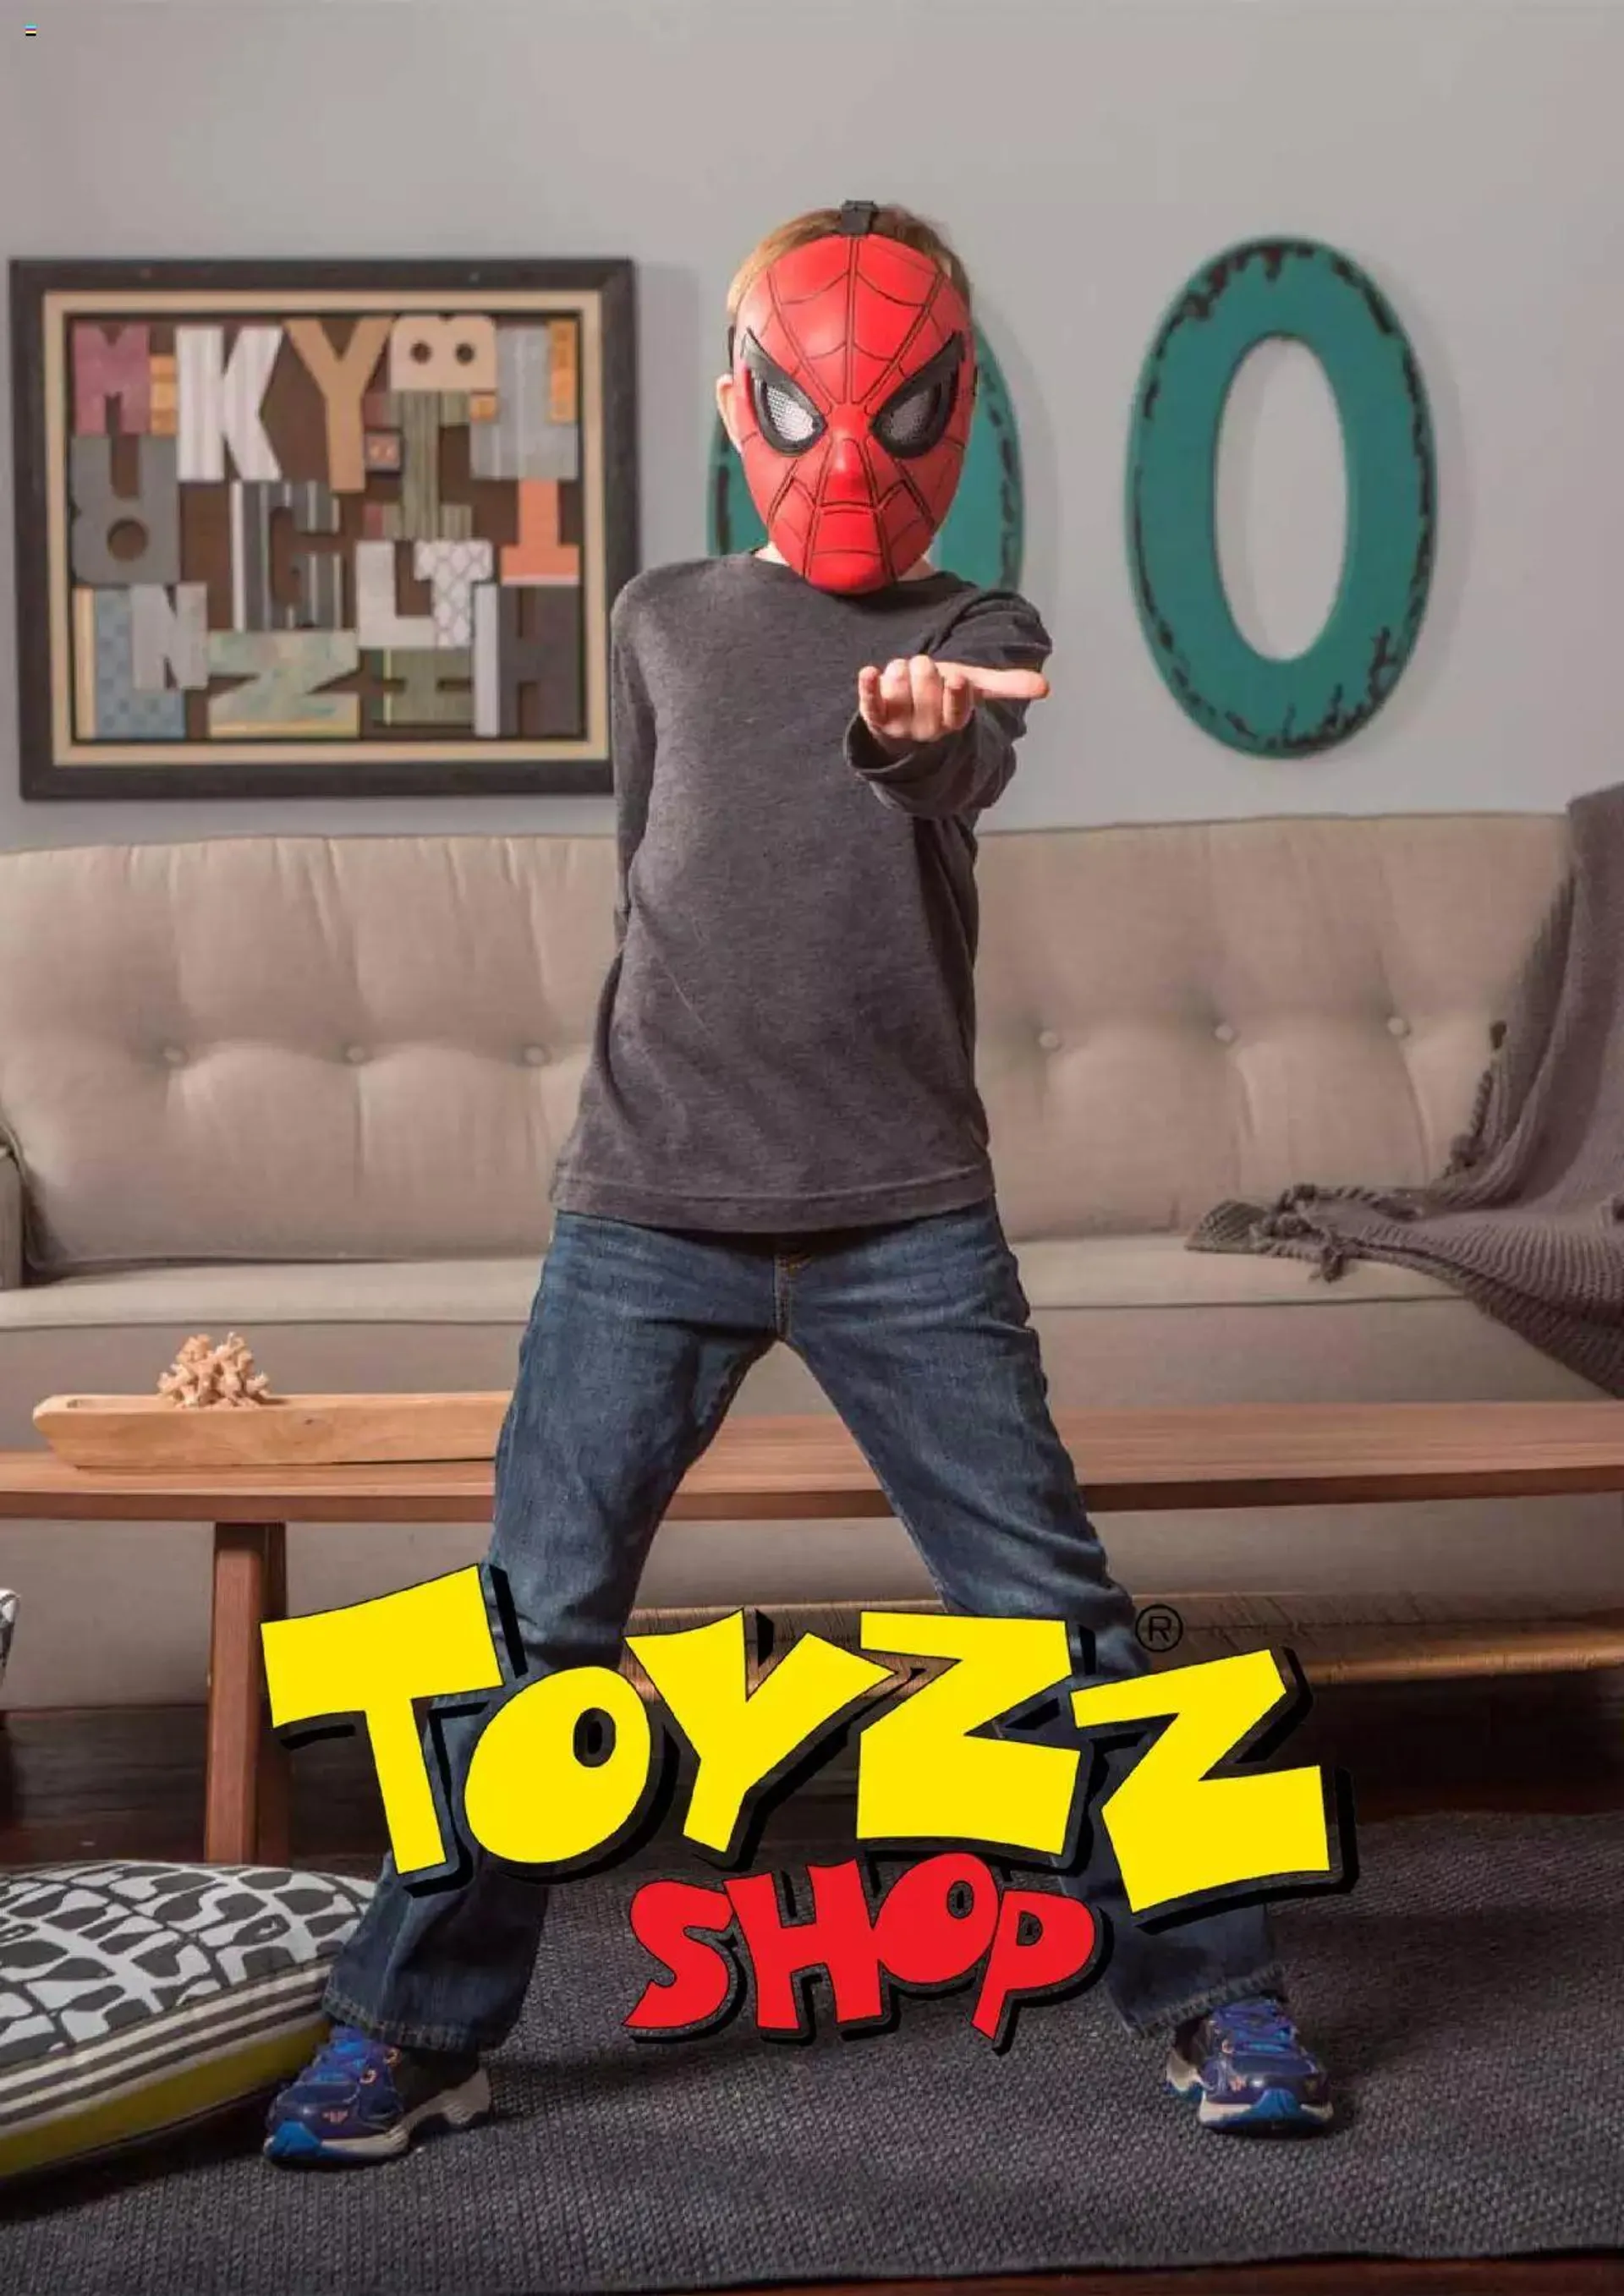 Toyzz Shop Katalog Spiderman - 11